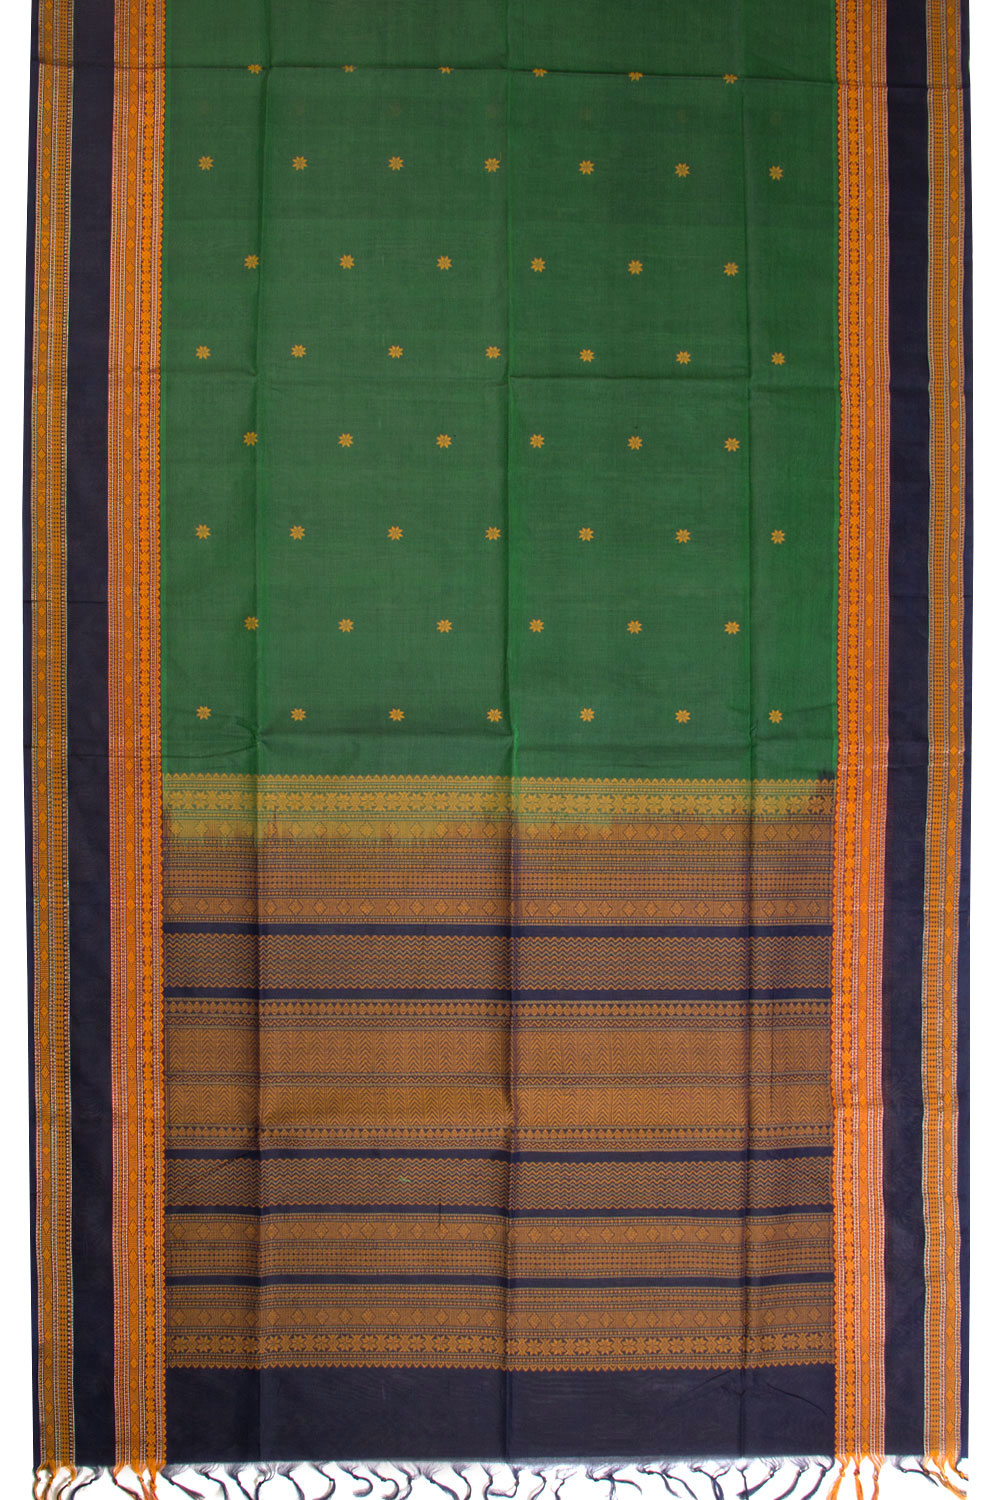 Green Handloom Kanchi Silk Cotton Saree 10069257 - Avishya